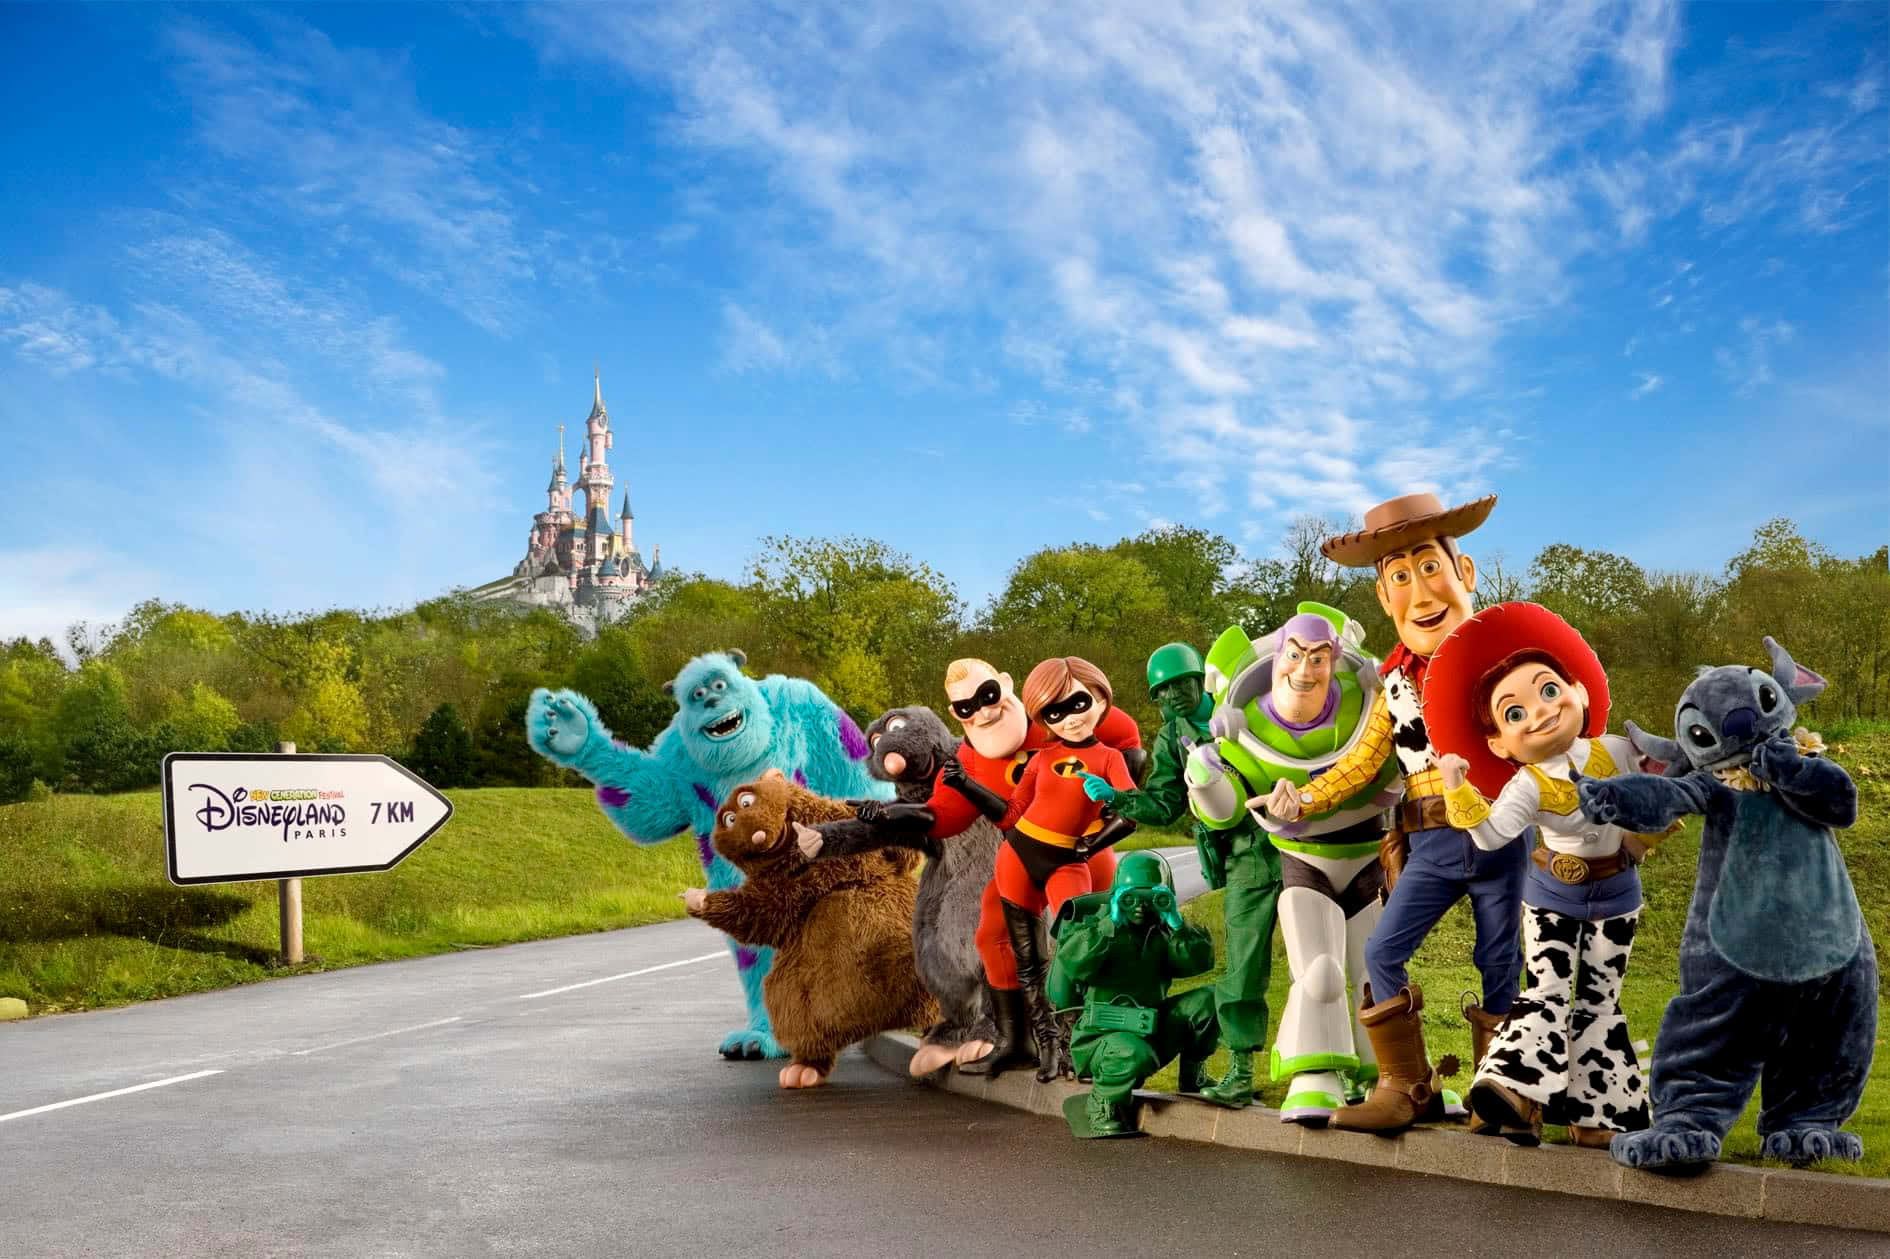 Disney Characters Invite You To Visit Disneyland Paris Wallpaper